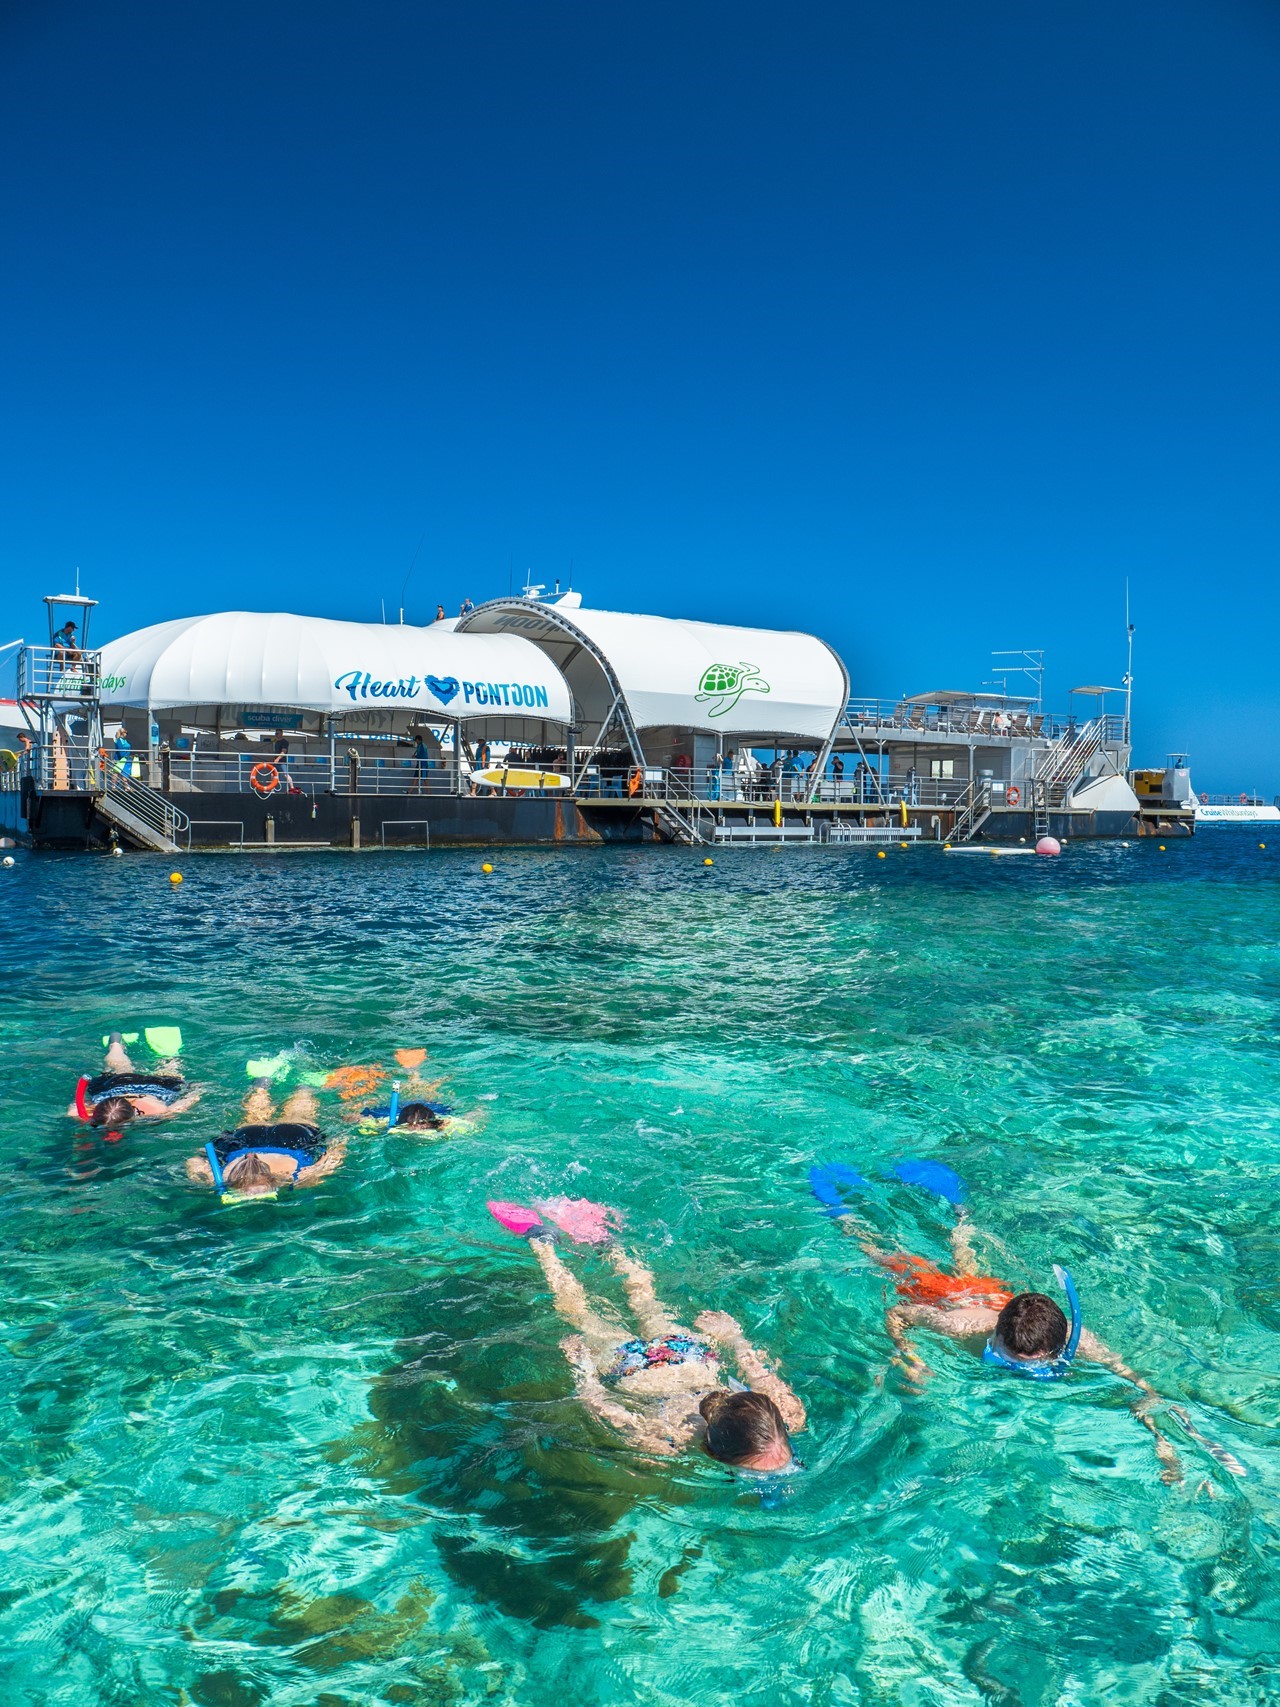 whitsunday reef cruises